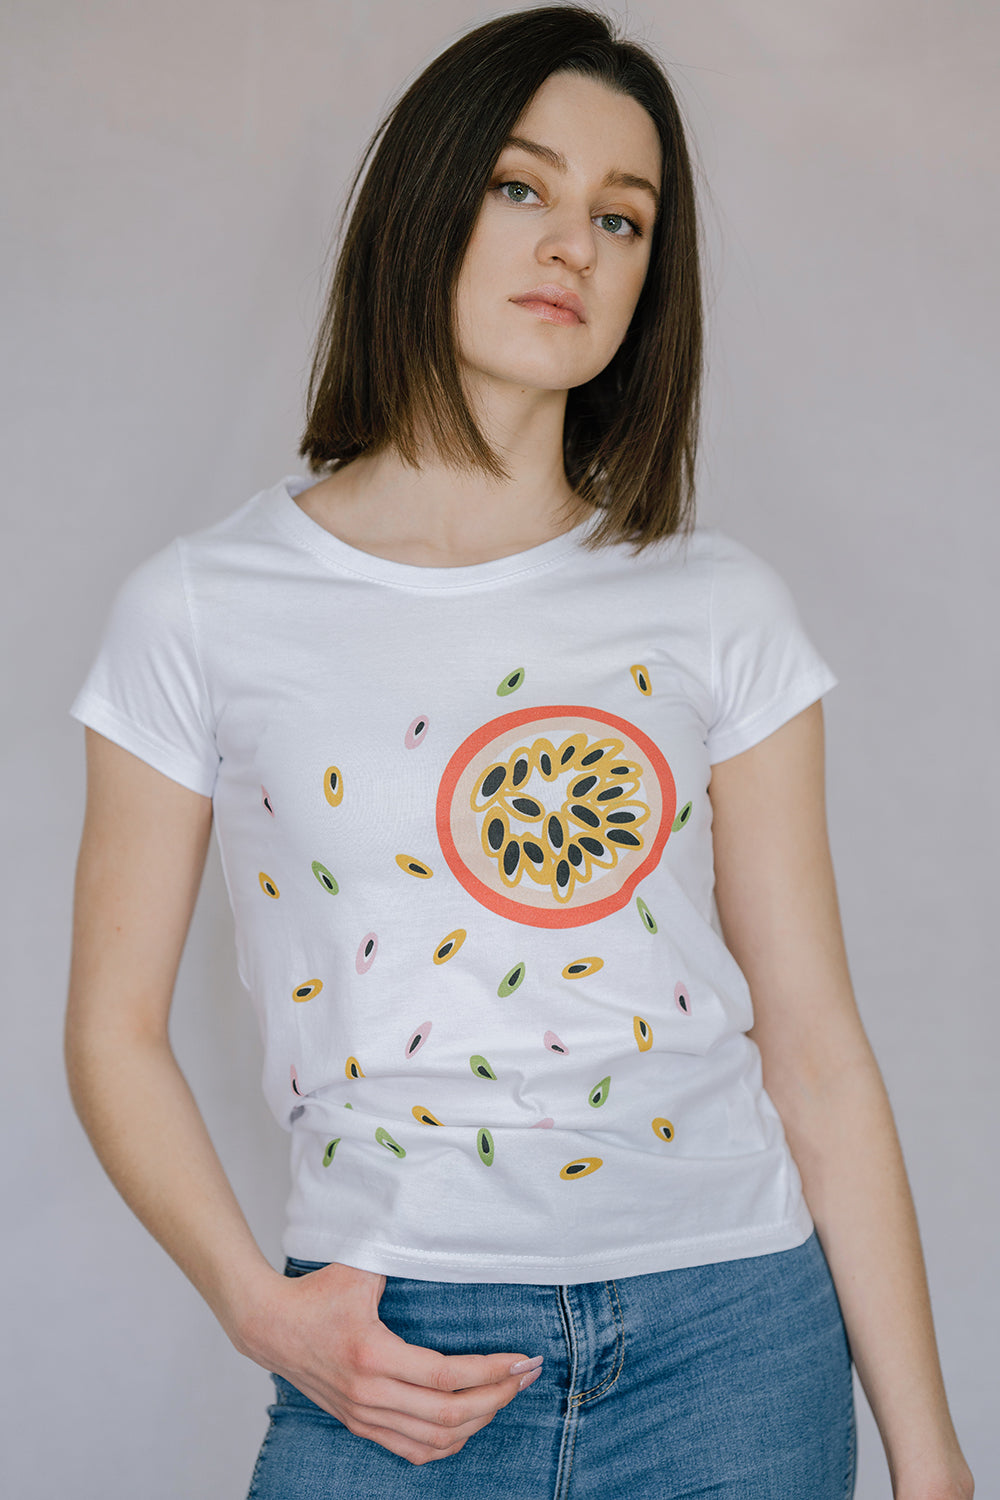 Lilit-Sarkisian-Fruit-t-shirt